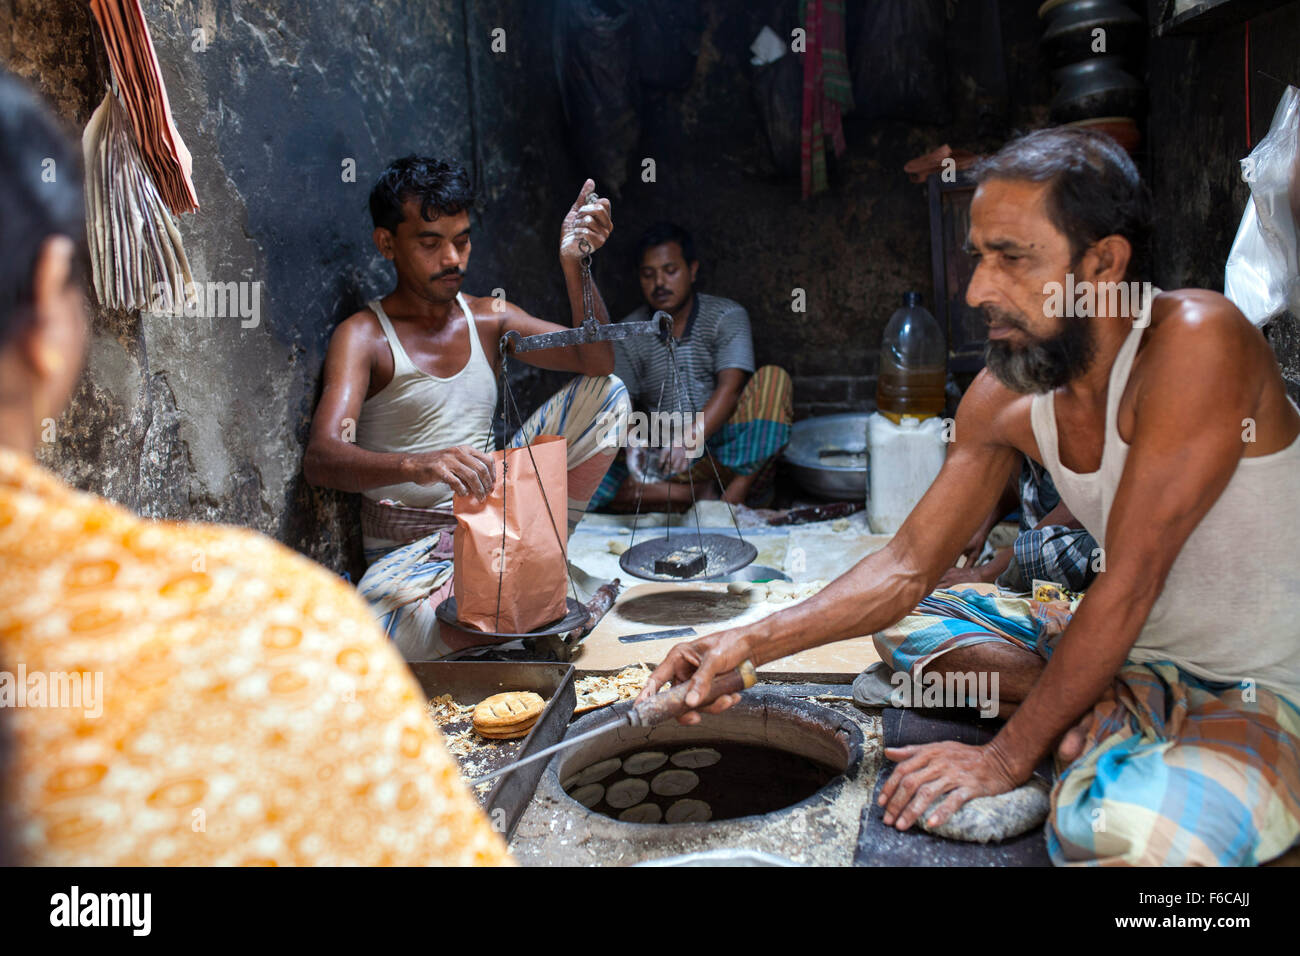 Dhaka, Bangladesch. 15. November 2015. Arbeiter der Bakarkhani in alten Dhaka am 15. November machen, 2015.Bakarkhani ist ein traditionelles Essen der Menschen in der alten Dhaka. Alten Dhaka ist ein Begriff verwendet, um die historische Altstadt von der modernen Hauptstadt Dhaka beziehen. Es wurde im Jahre 1608 als Jahangir Nagar, der Hauptstadt von Mughal Bengal gegründet. Bildnachweis: Zakir Hossain Chowdhury Zakir/Alamy Live-Nachrichten Stockfoto